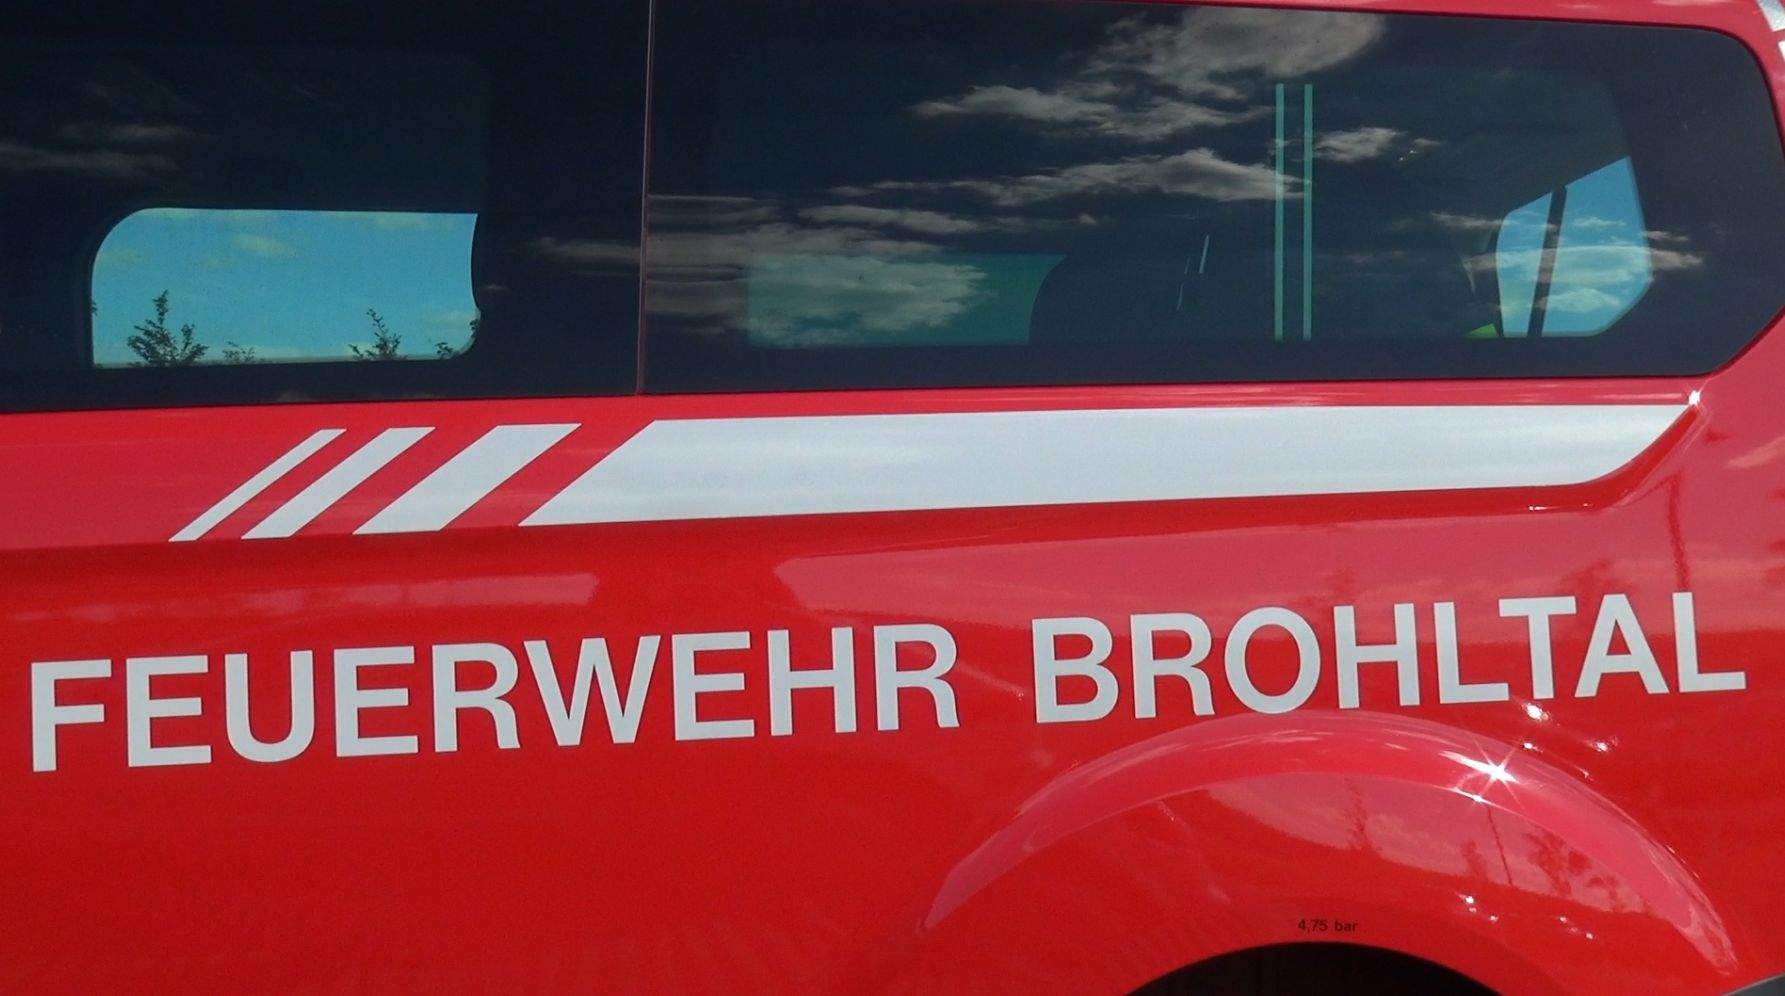 Wohnmobil steht auf der A61 in Vollbrand Feuerwehr Brohltal im Einsatz